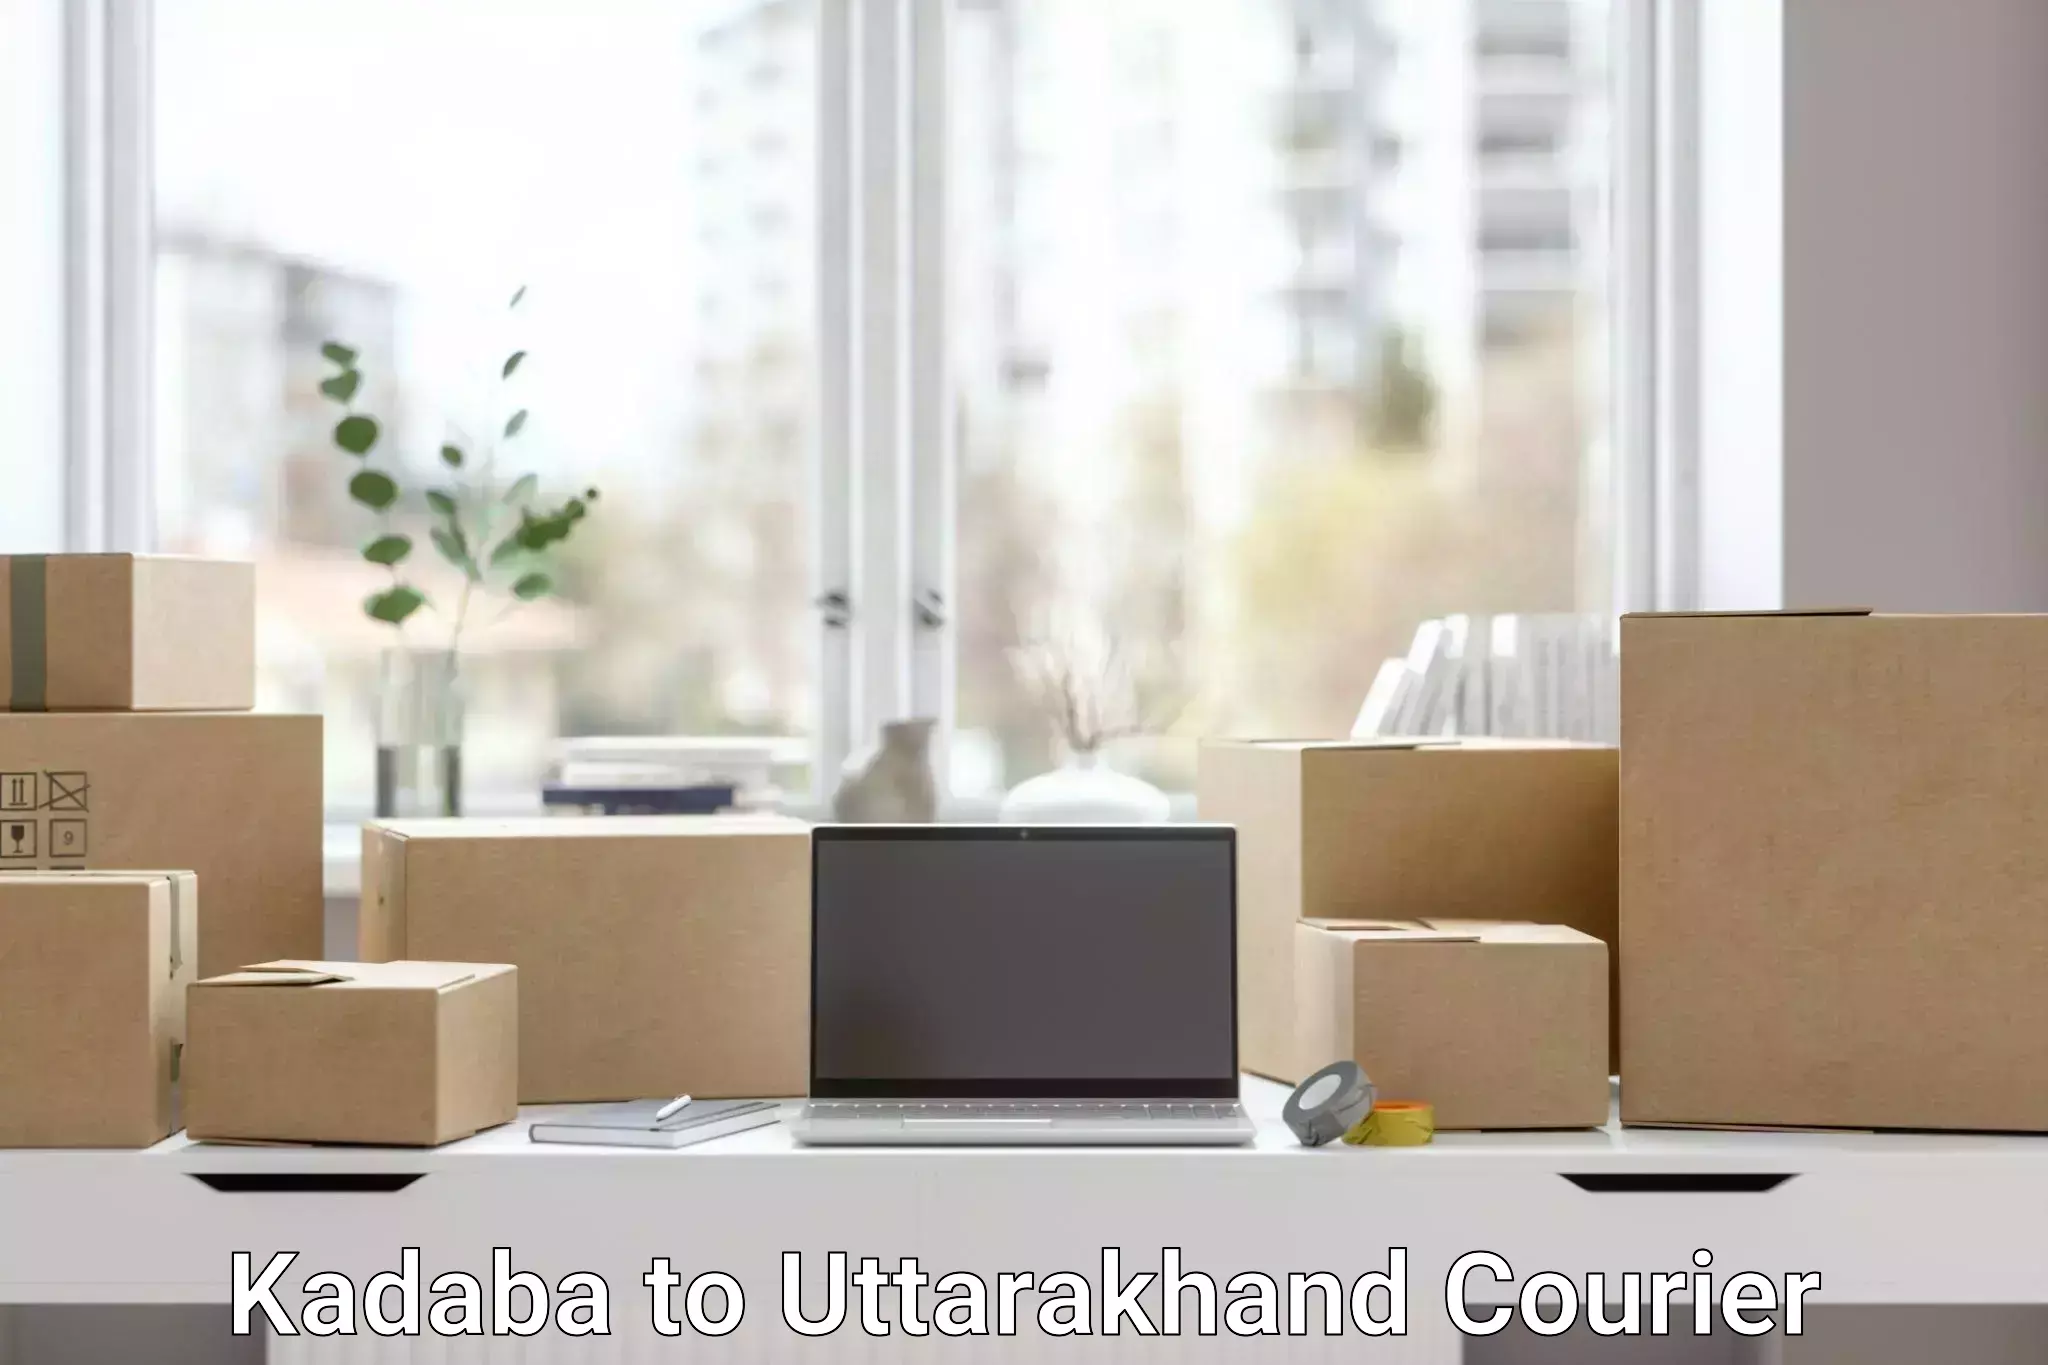 Customized delivery options Kadaba to Uttarakhand